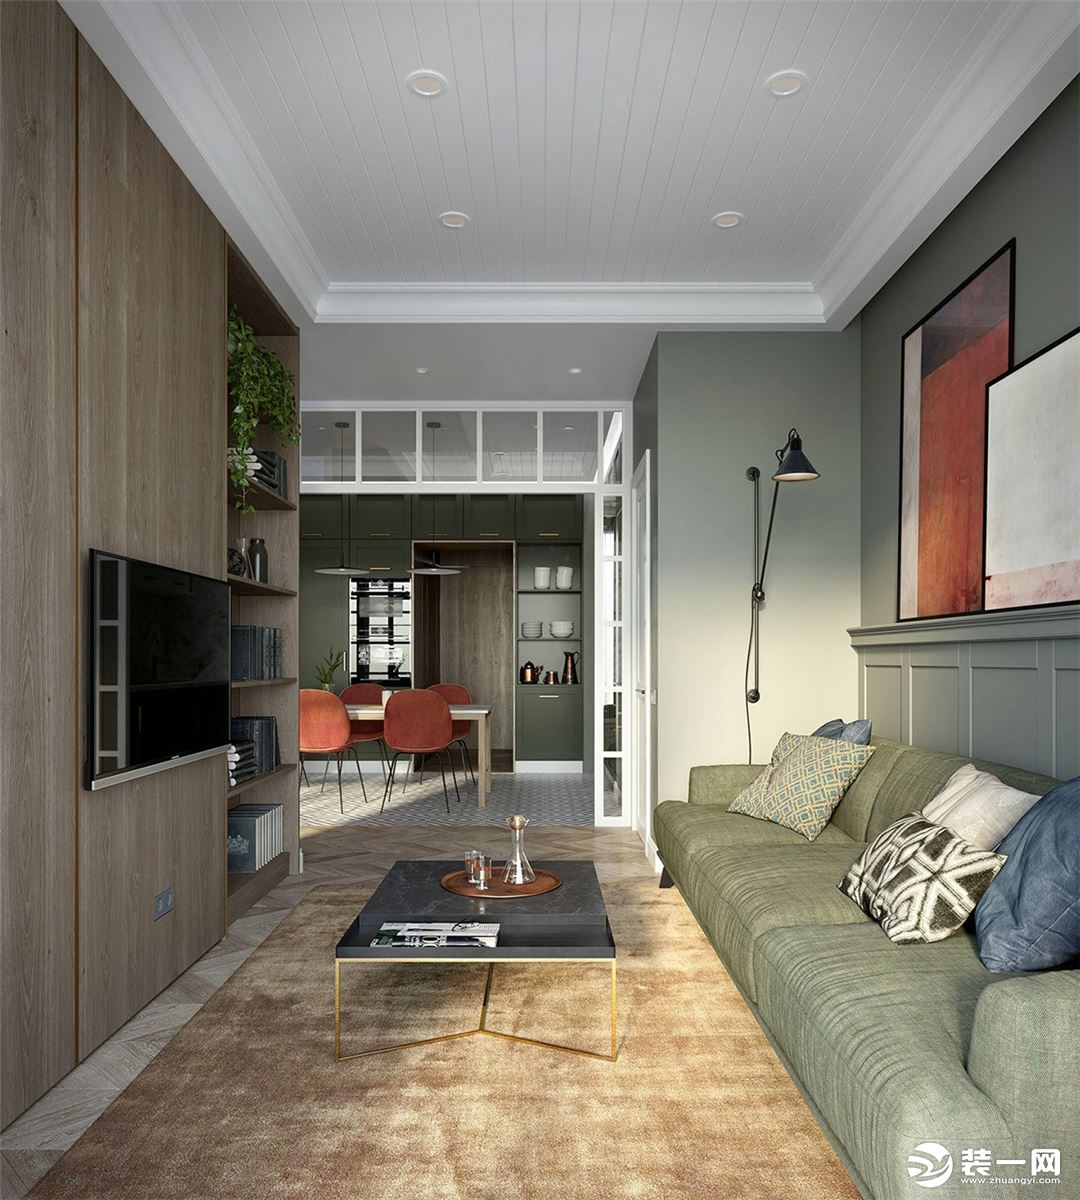 以绿色点缀，没有多余的色彩，将客厅简约温暖的特性表达到位。